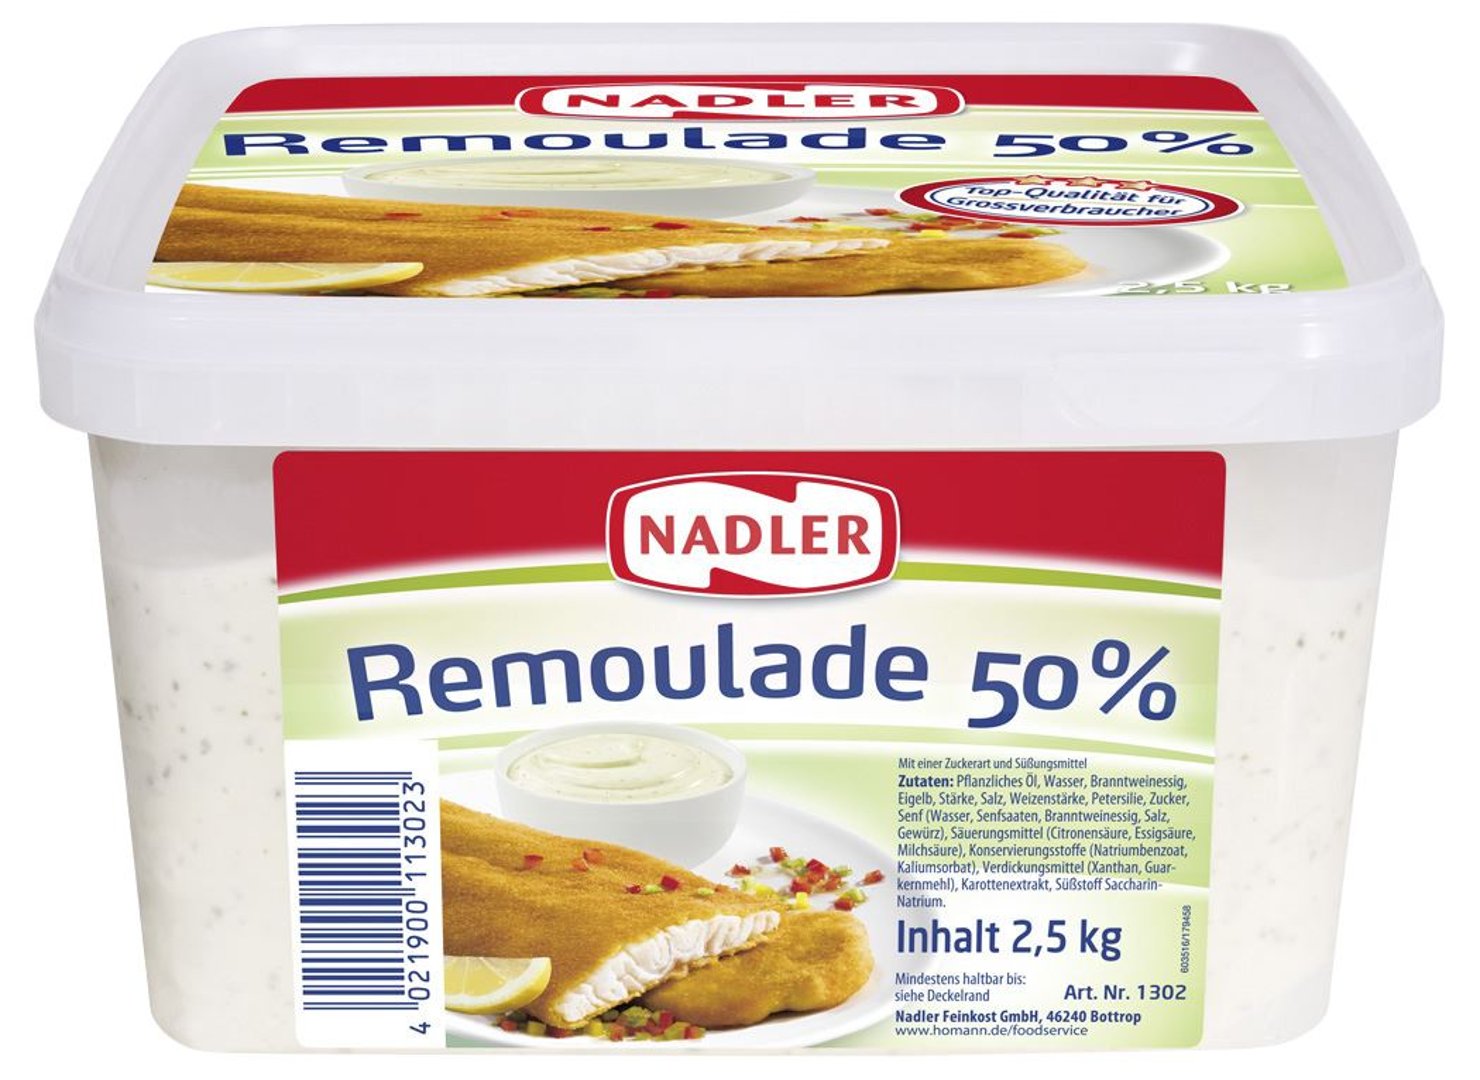 Nadler - Remoulade 50 % Fett 2,5 kg Schale